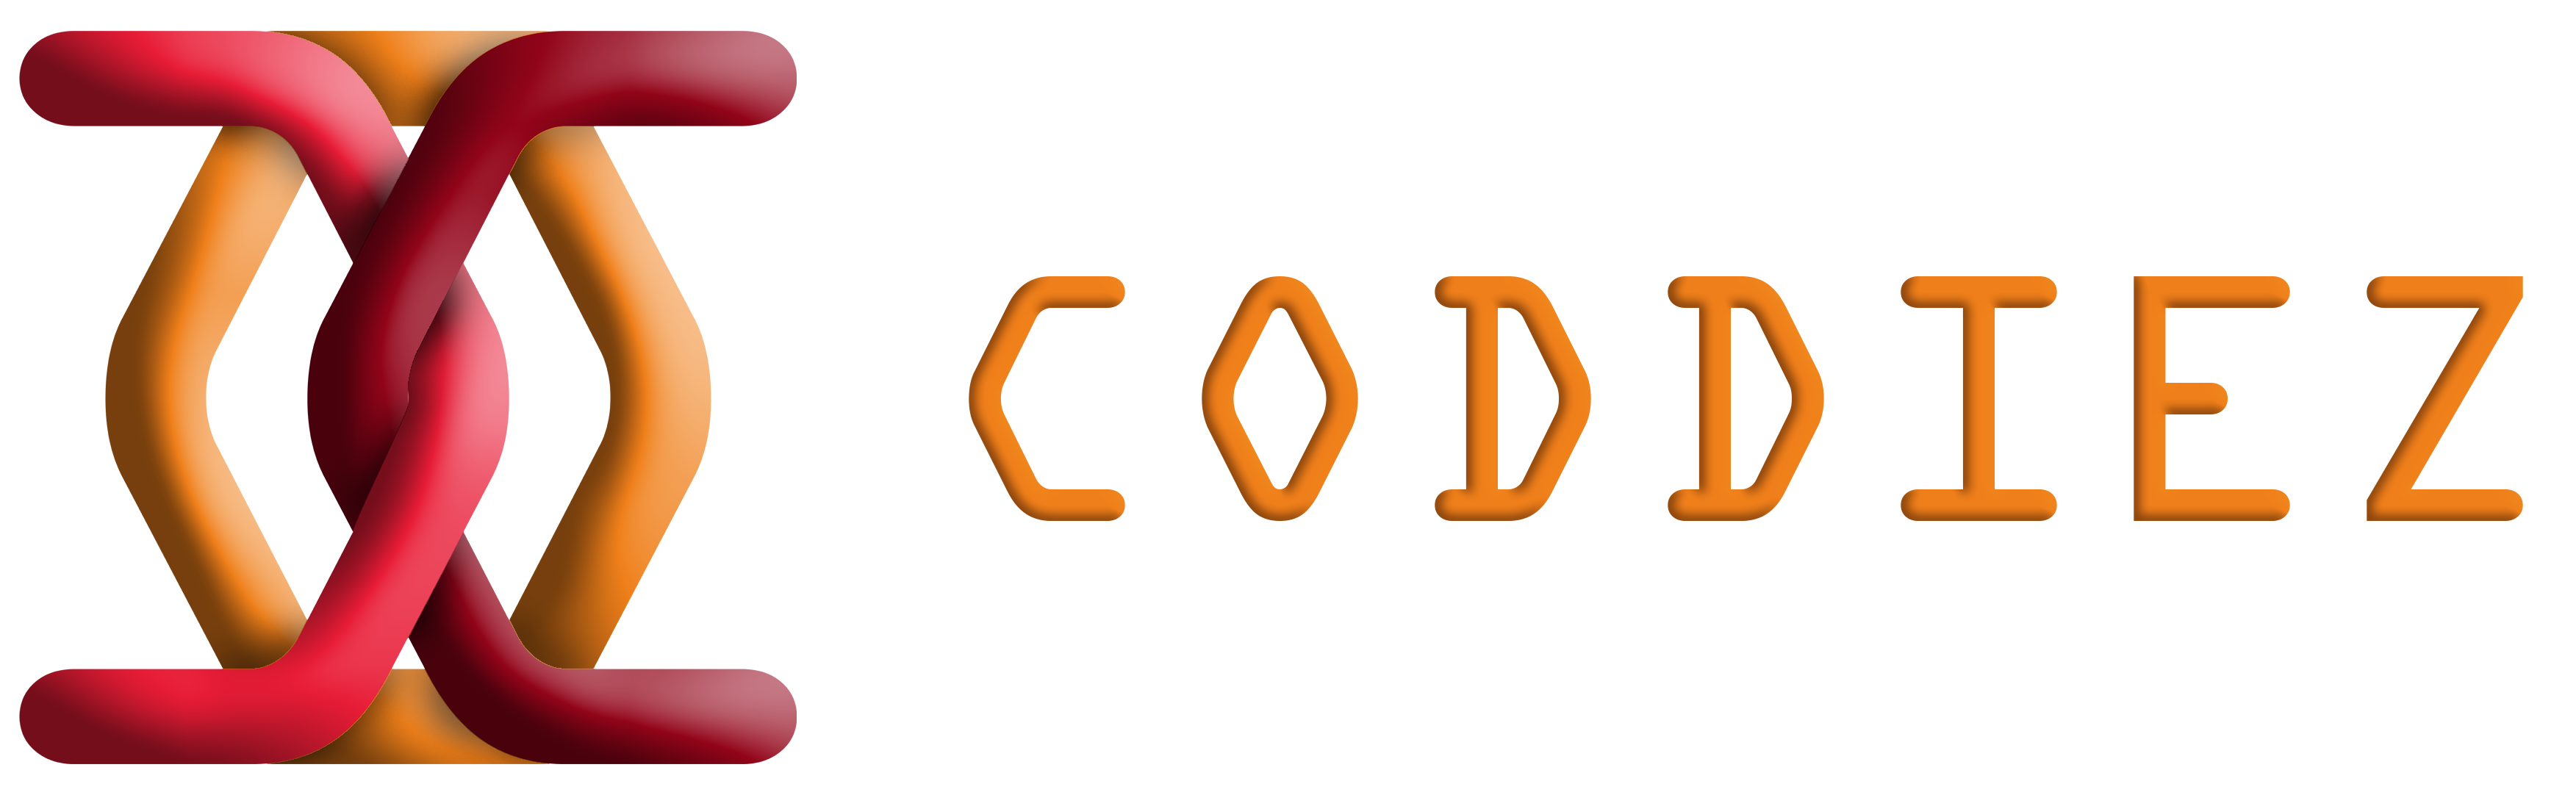 coddiez-logo